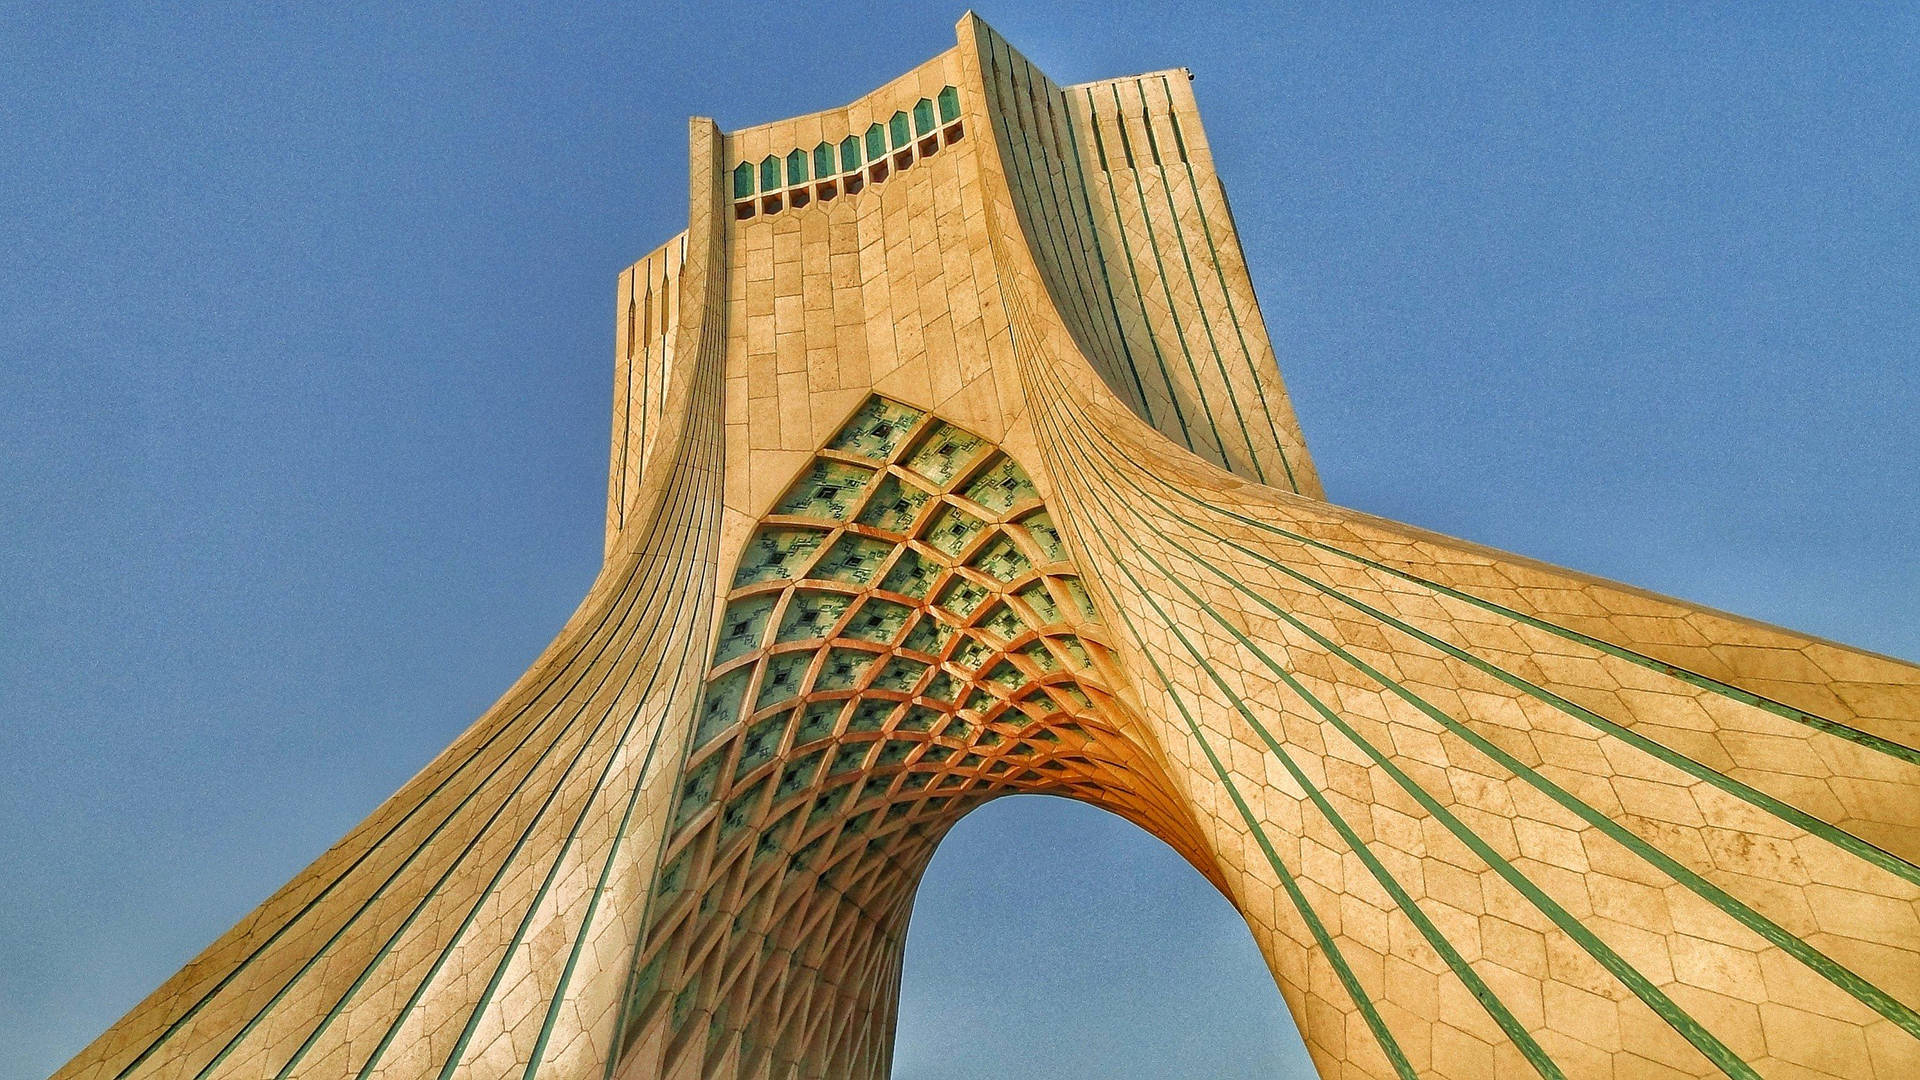 Teheran Azadi Tower skaber et dramatisk og smukt kollage. Wallpaper